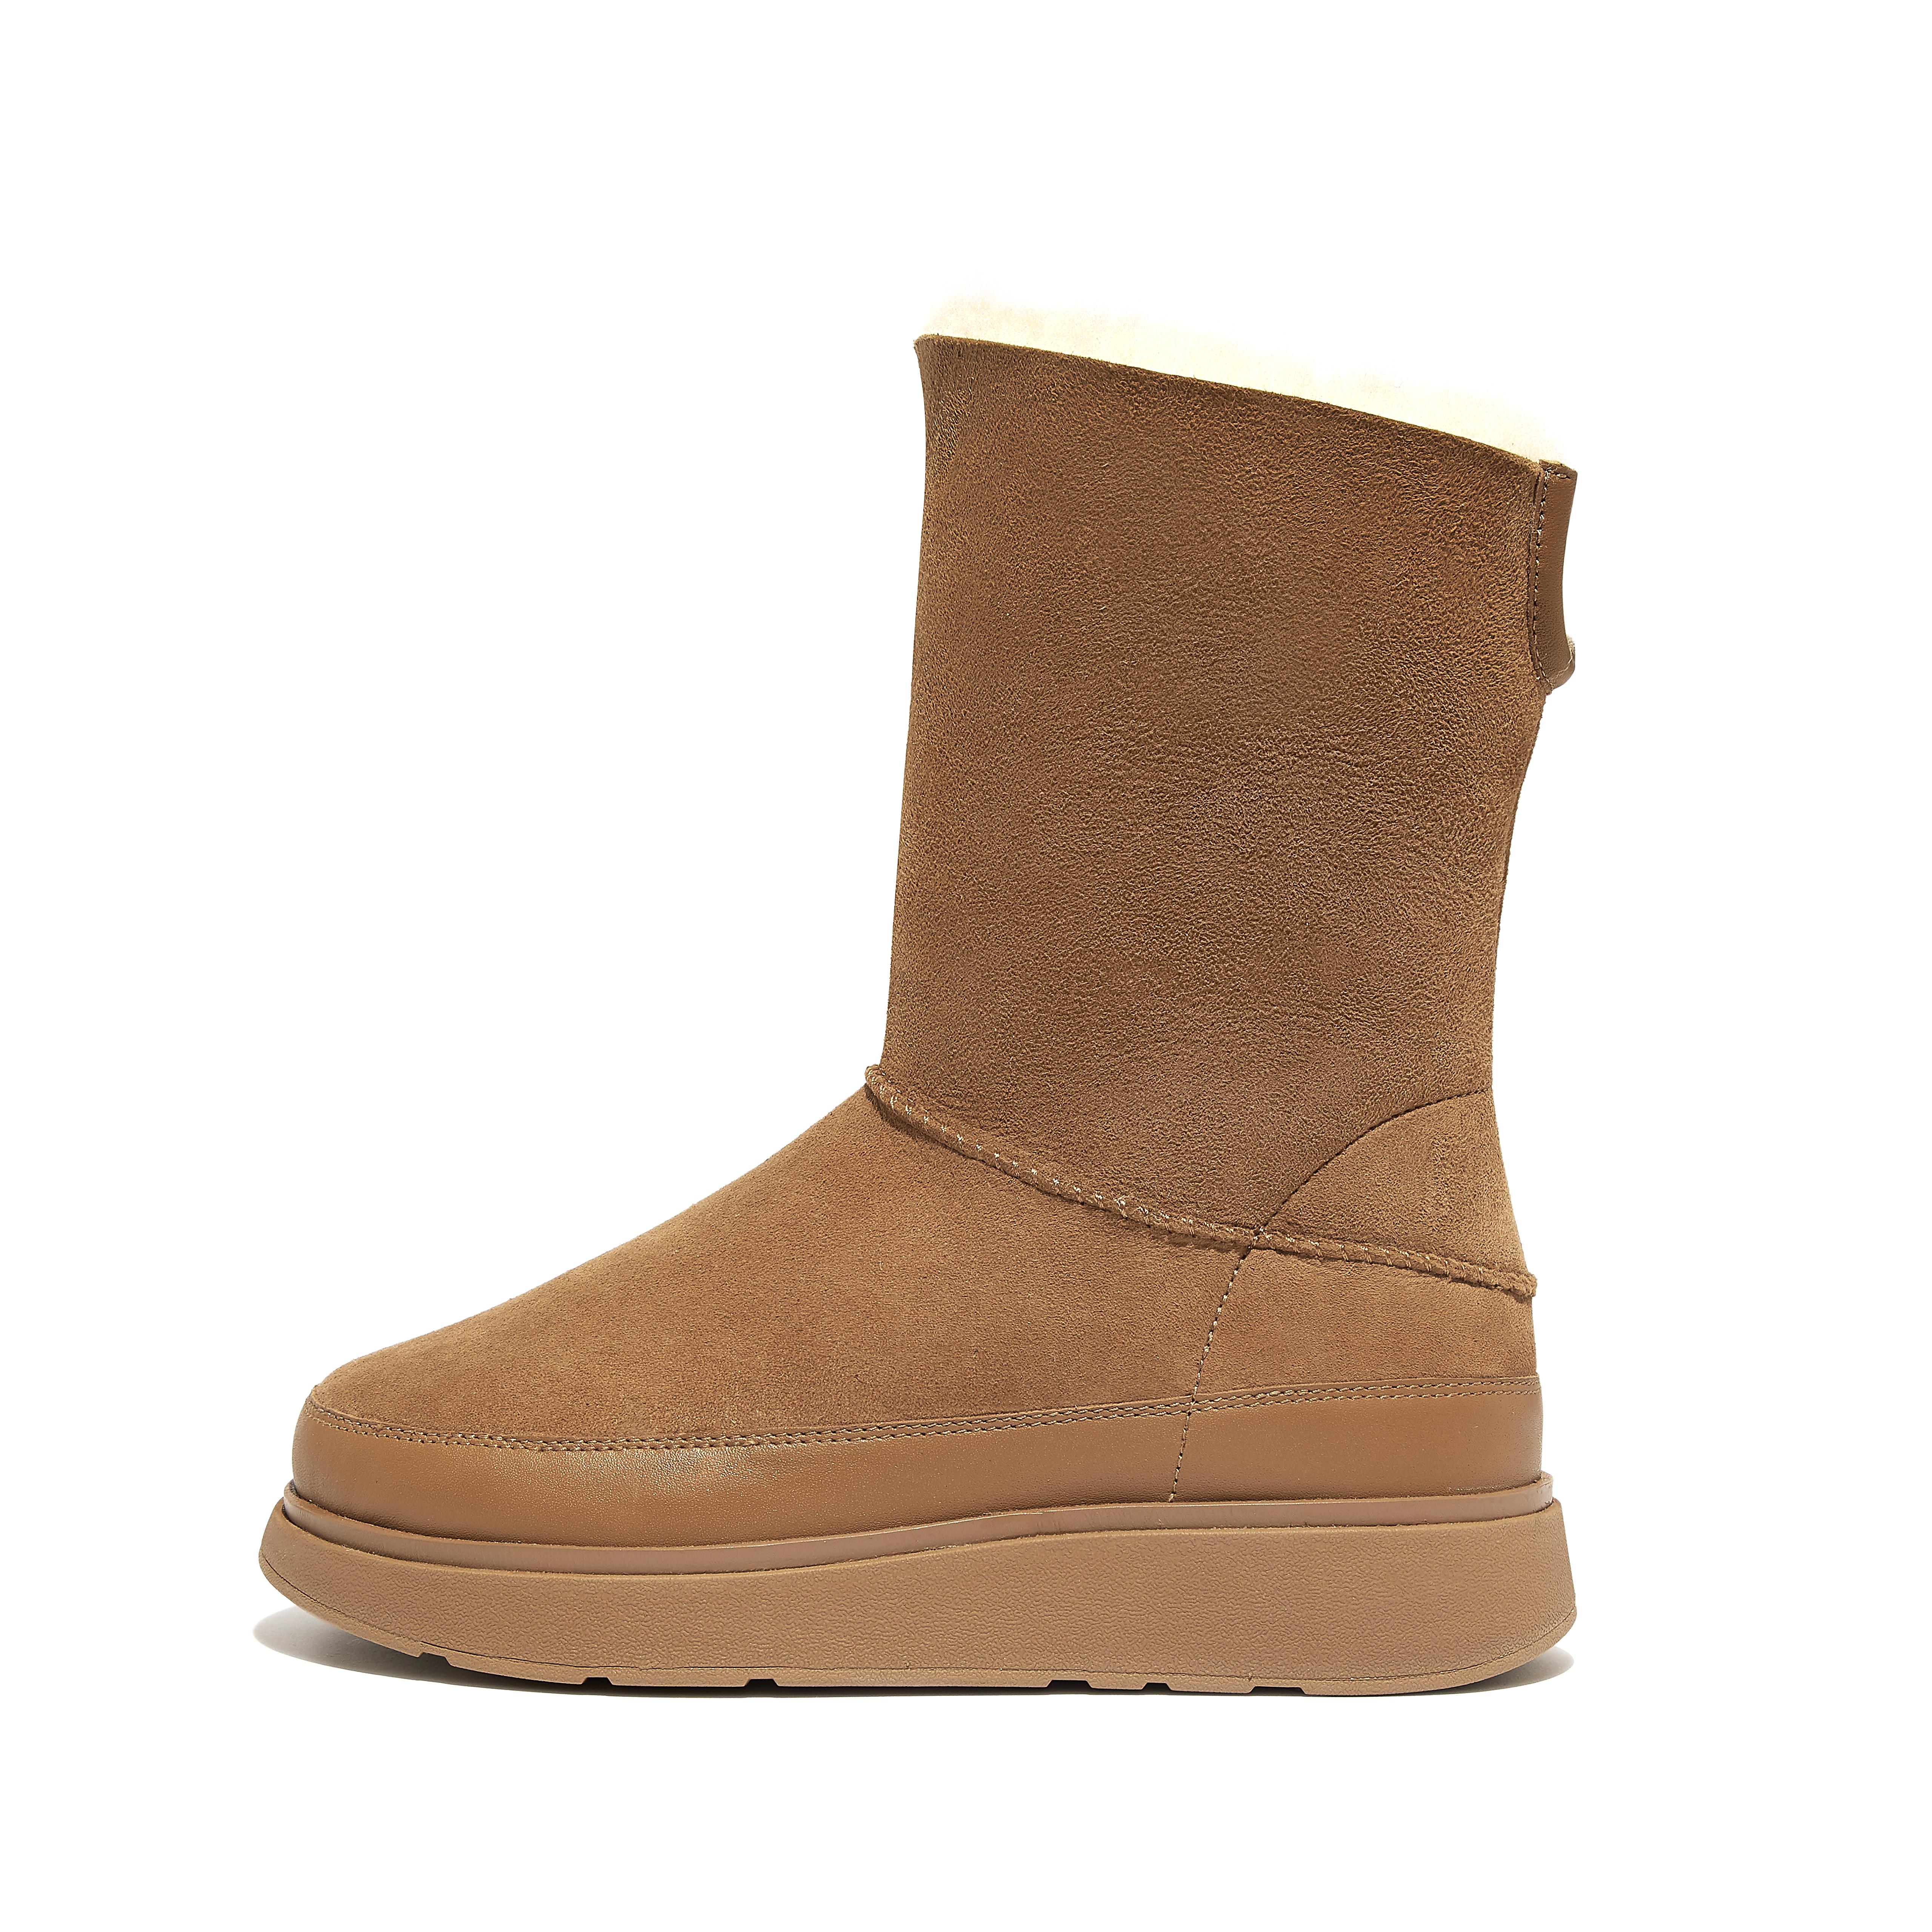 핏플랍 Fitflop Short Double-Faced Shearling Boots,Desert Tan